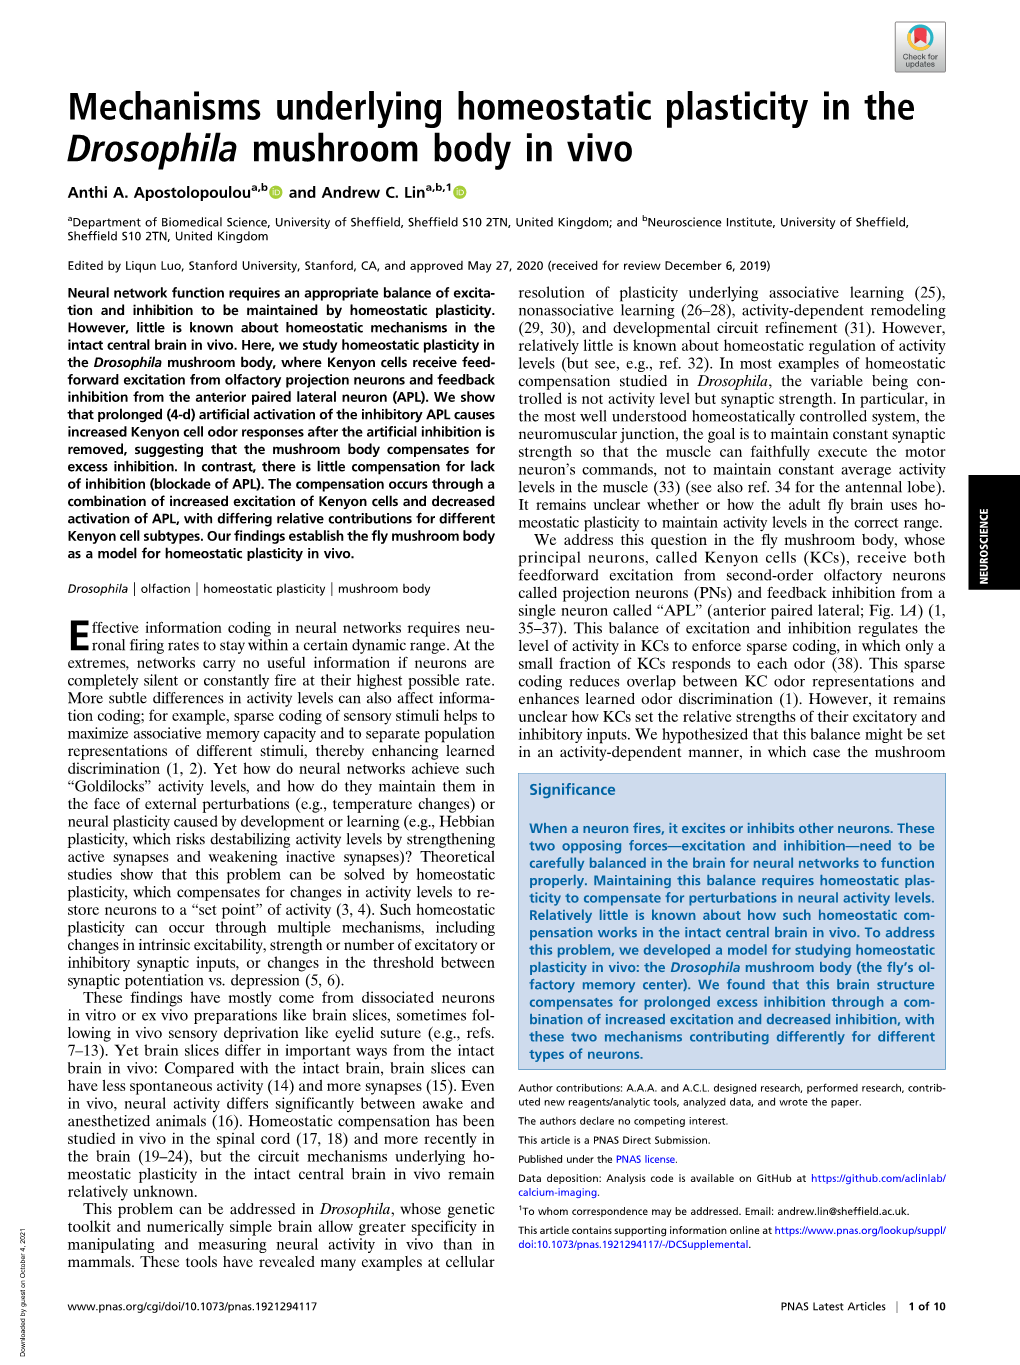 Mechanisms Underlying Homeostatic Plasticity in the Drosophila Mushroom Body in Vivo